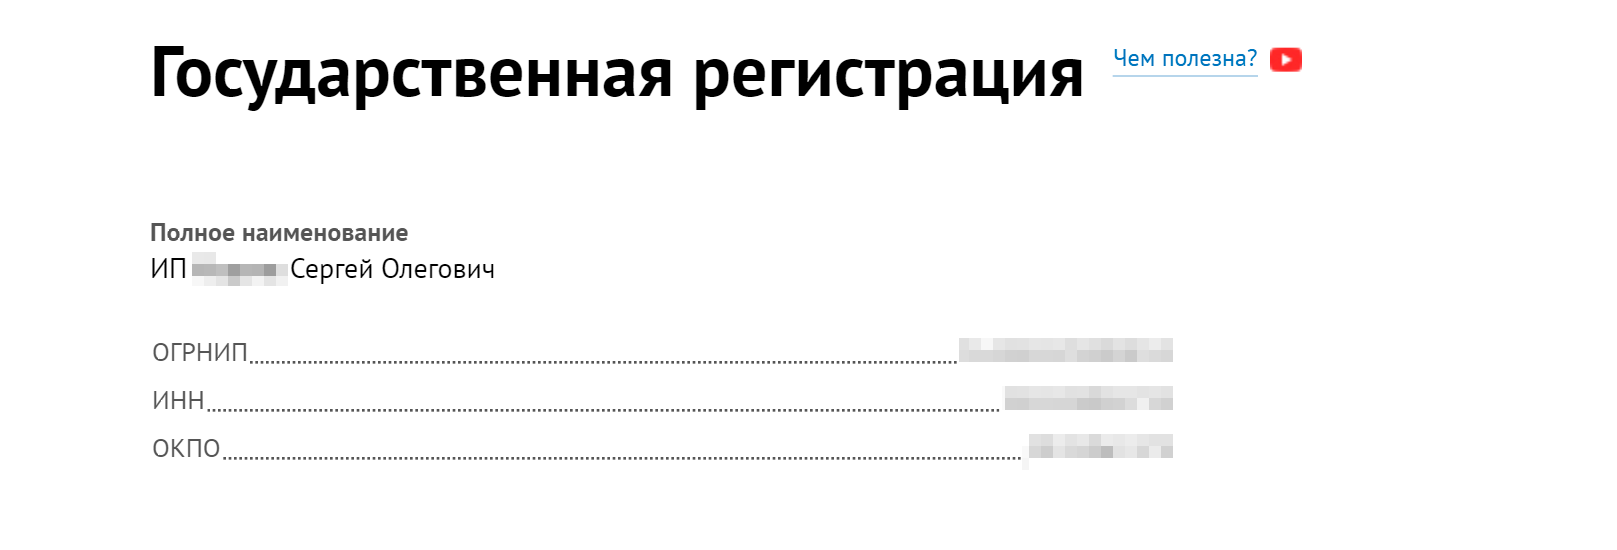 Такие сведения можно найти, например, на сайте rusprofile.ru или на других аналогичных. Они не относятся к персональным данным, поэтому размещать их в открытом доступе закон не запрещает